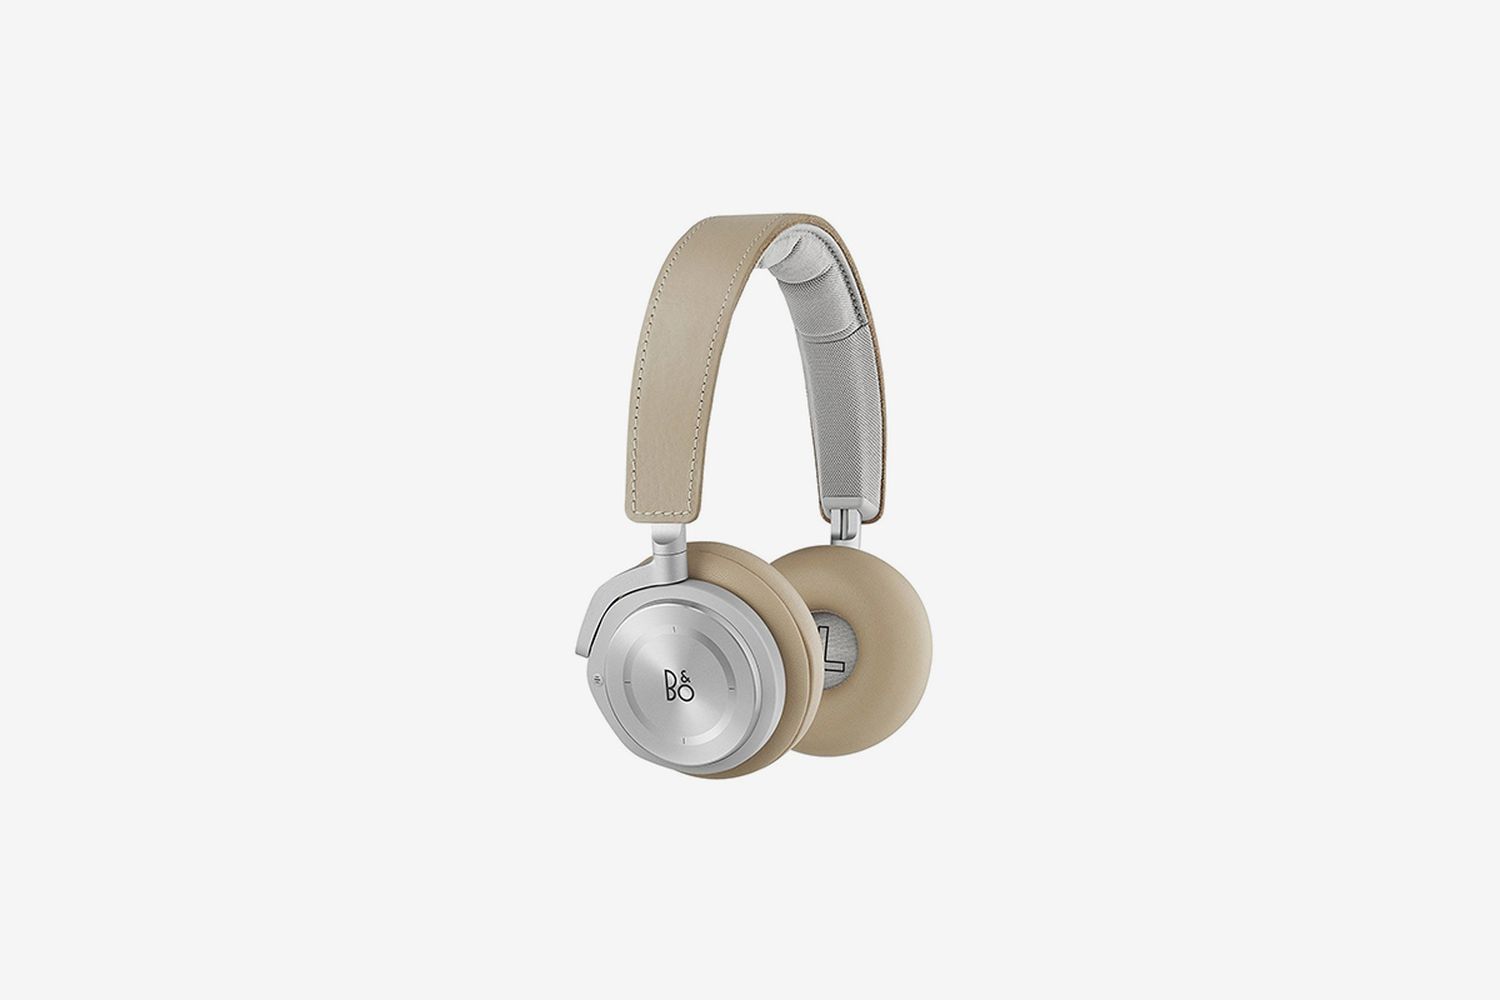 H8 Wireless On-Ear Headphones